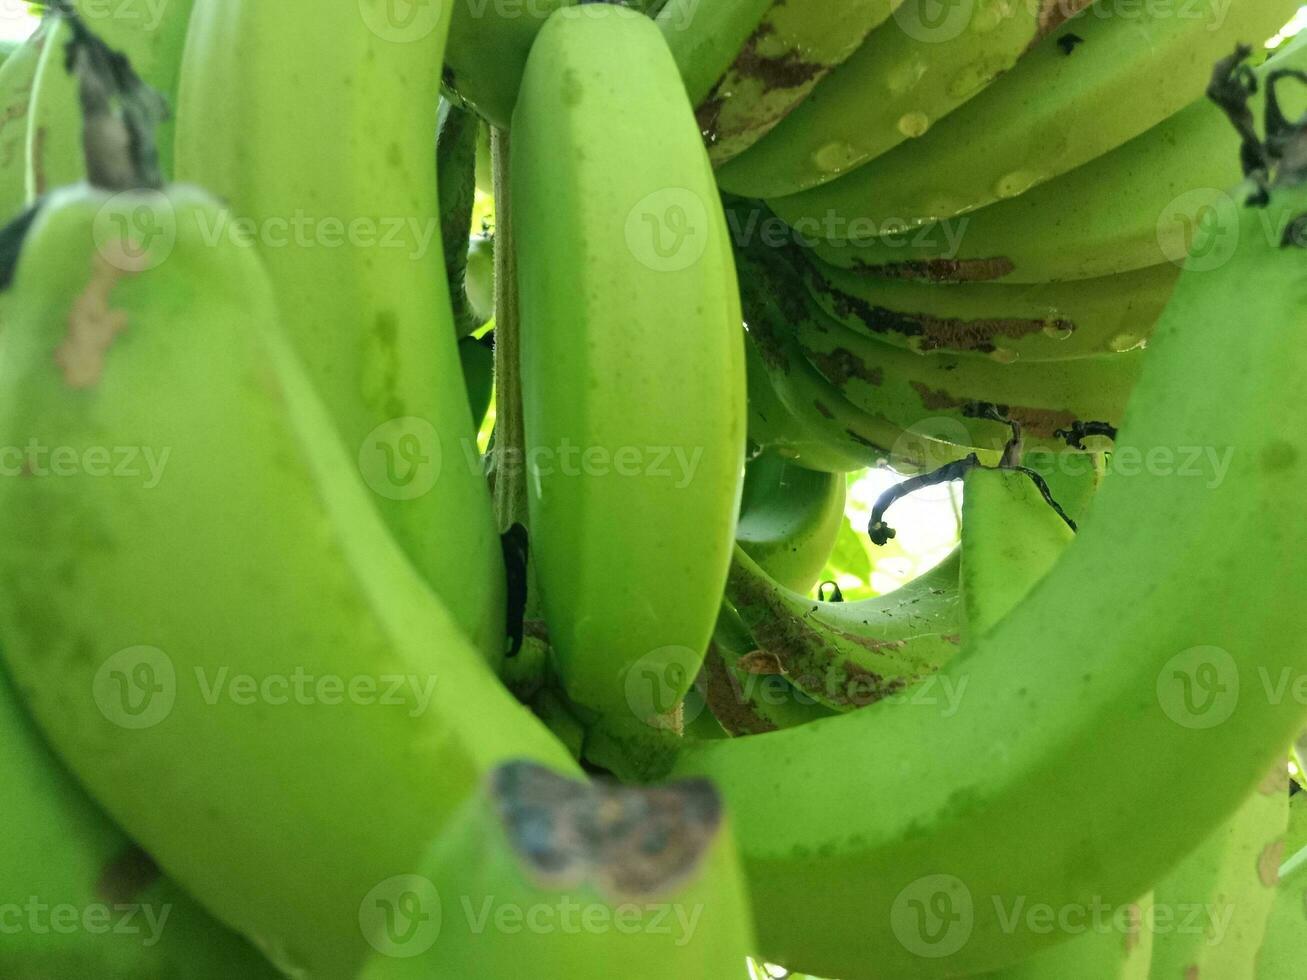 groen banaan achtergrond met ochtend- dauw druppels. heeft een natuurlijk gezond en vers indruk. foto